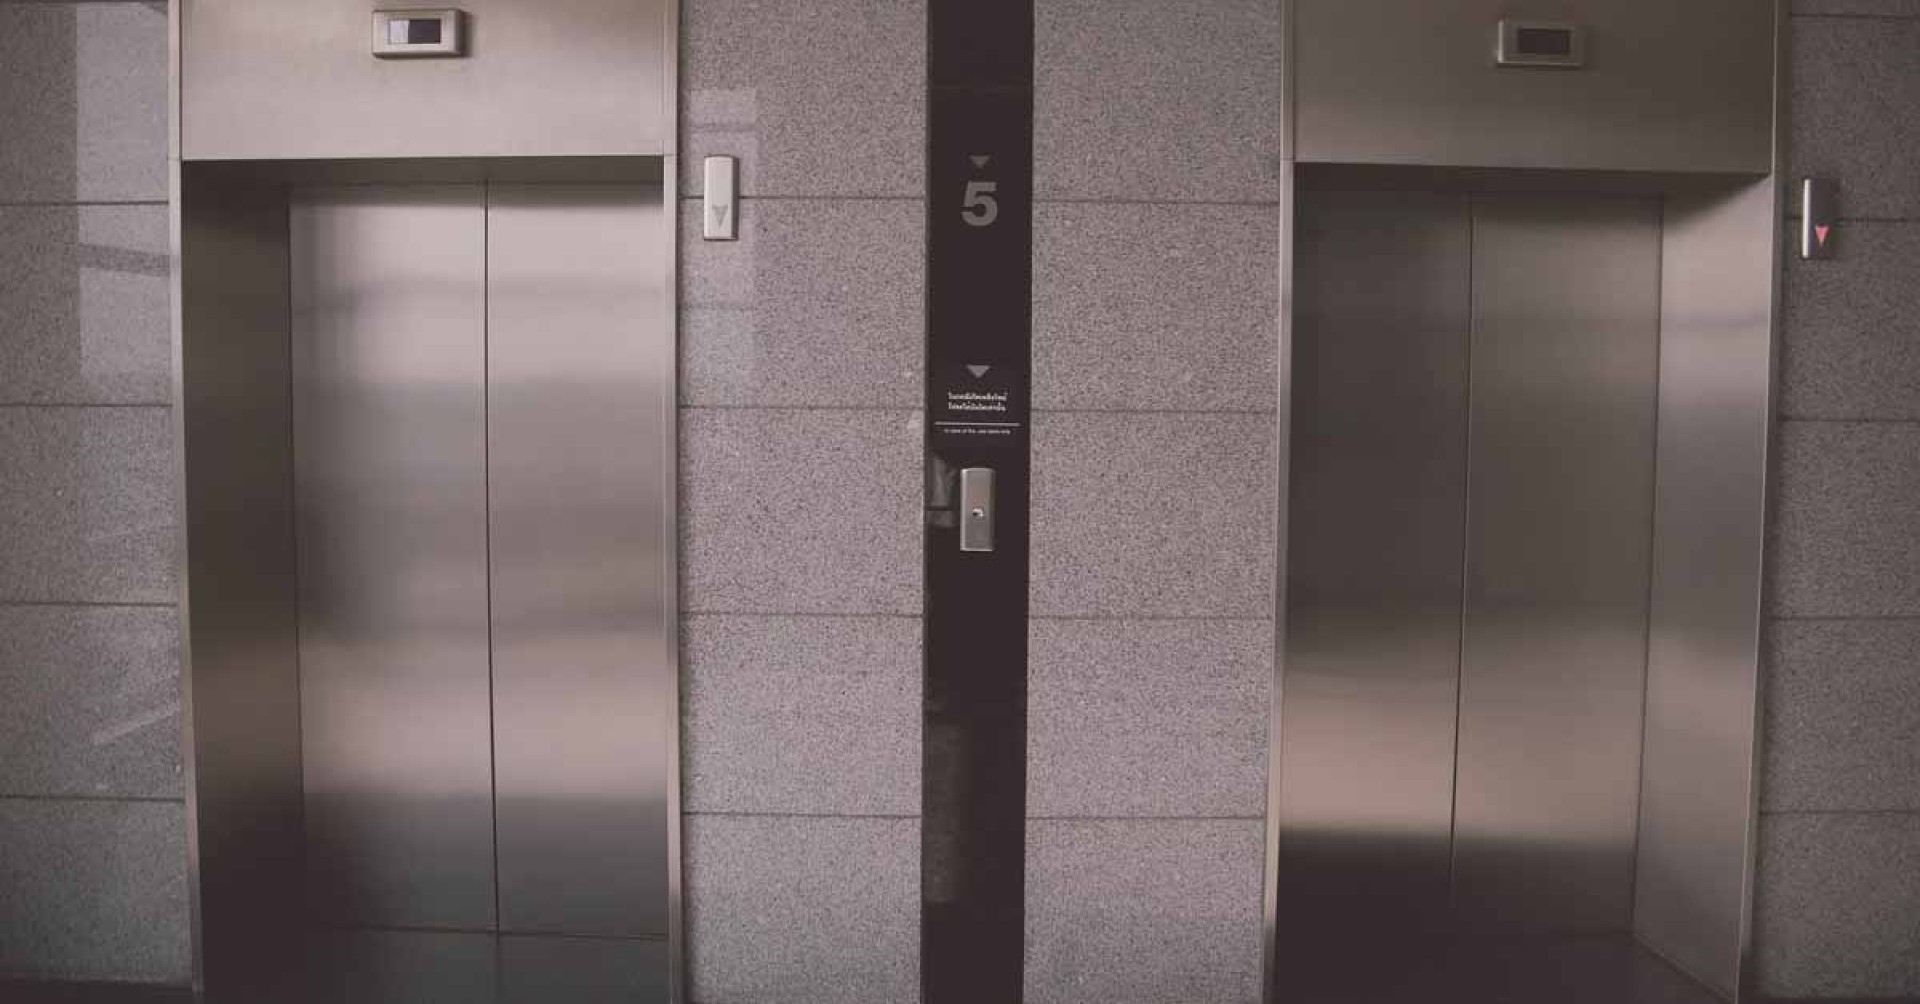 Luke draagt het mandje zelf naar de lift.